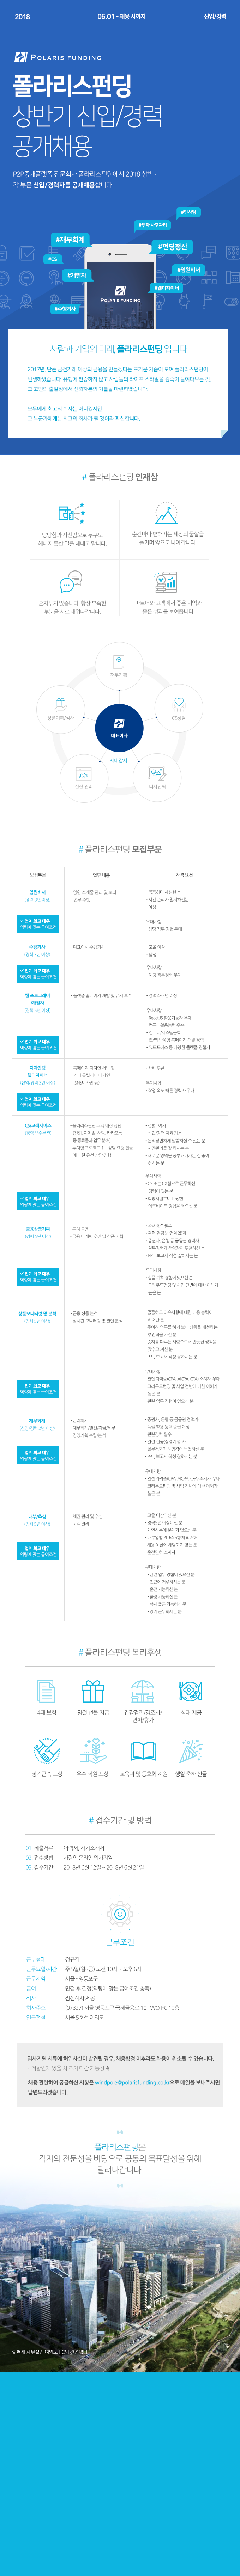 2018 폴라리스펀딩 상반기 신입/경력 공개채용